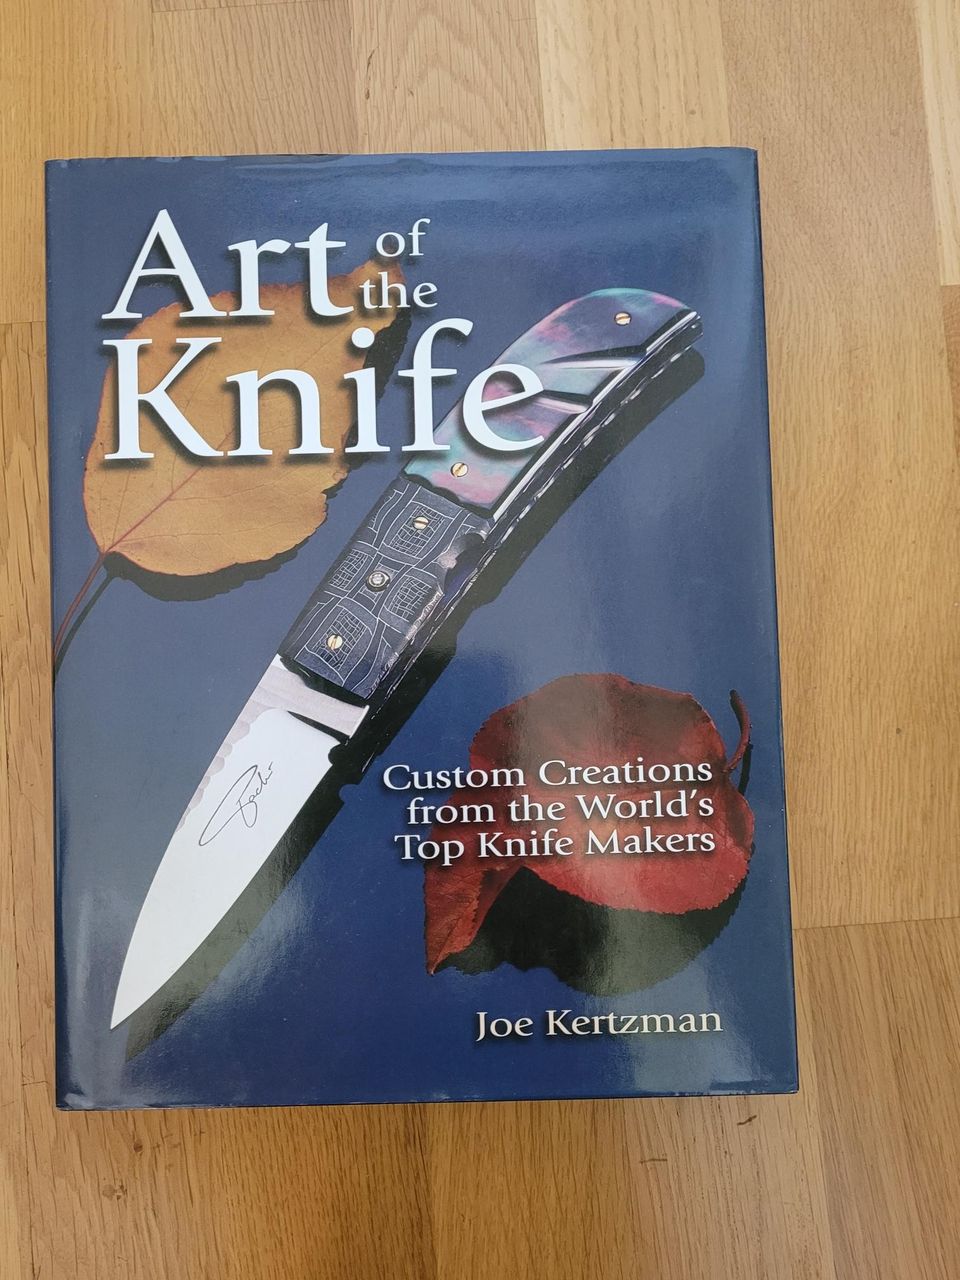 Art of the Knife, Joe Kertzman, puukontekijät